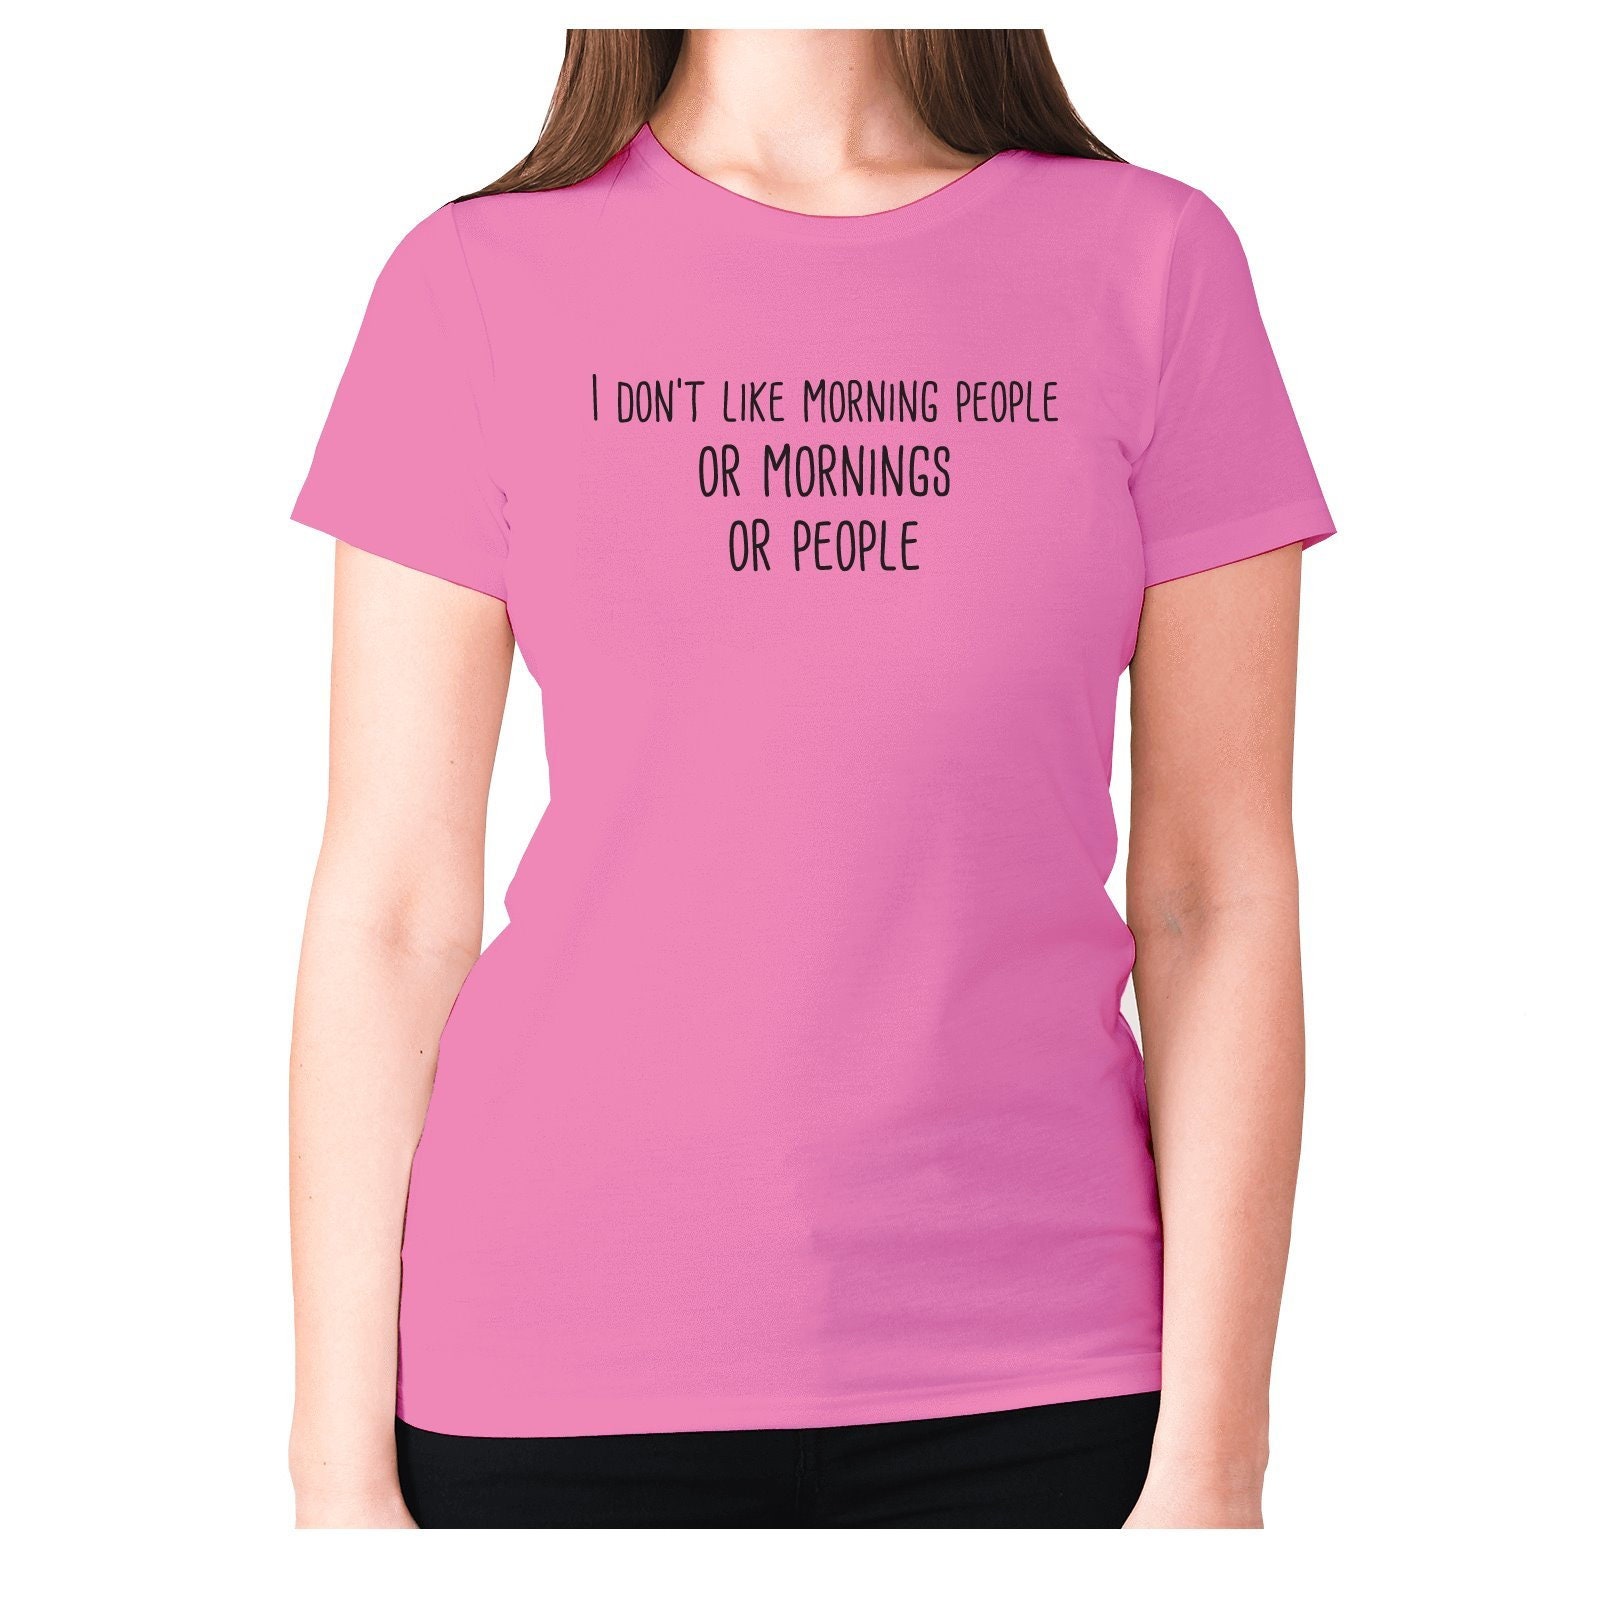 Womens funny t-shirt slogan tee ladies novelty humour I | Etsy